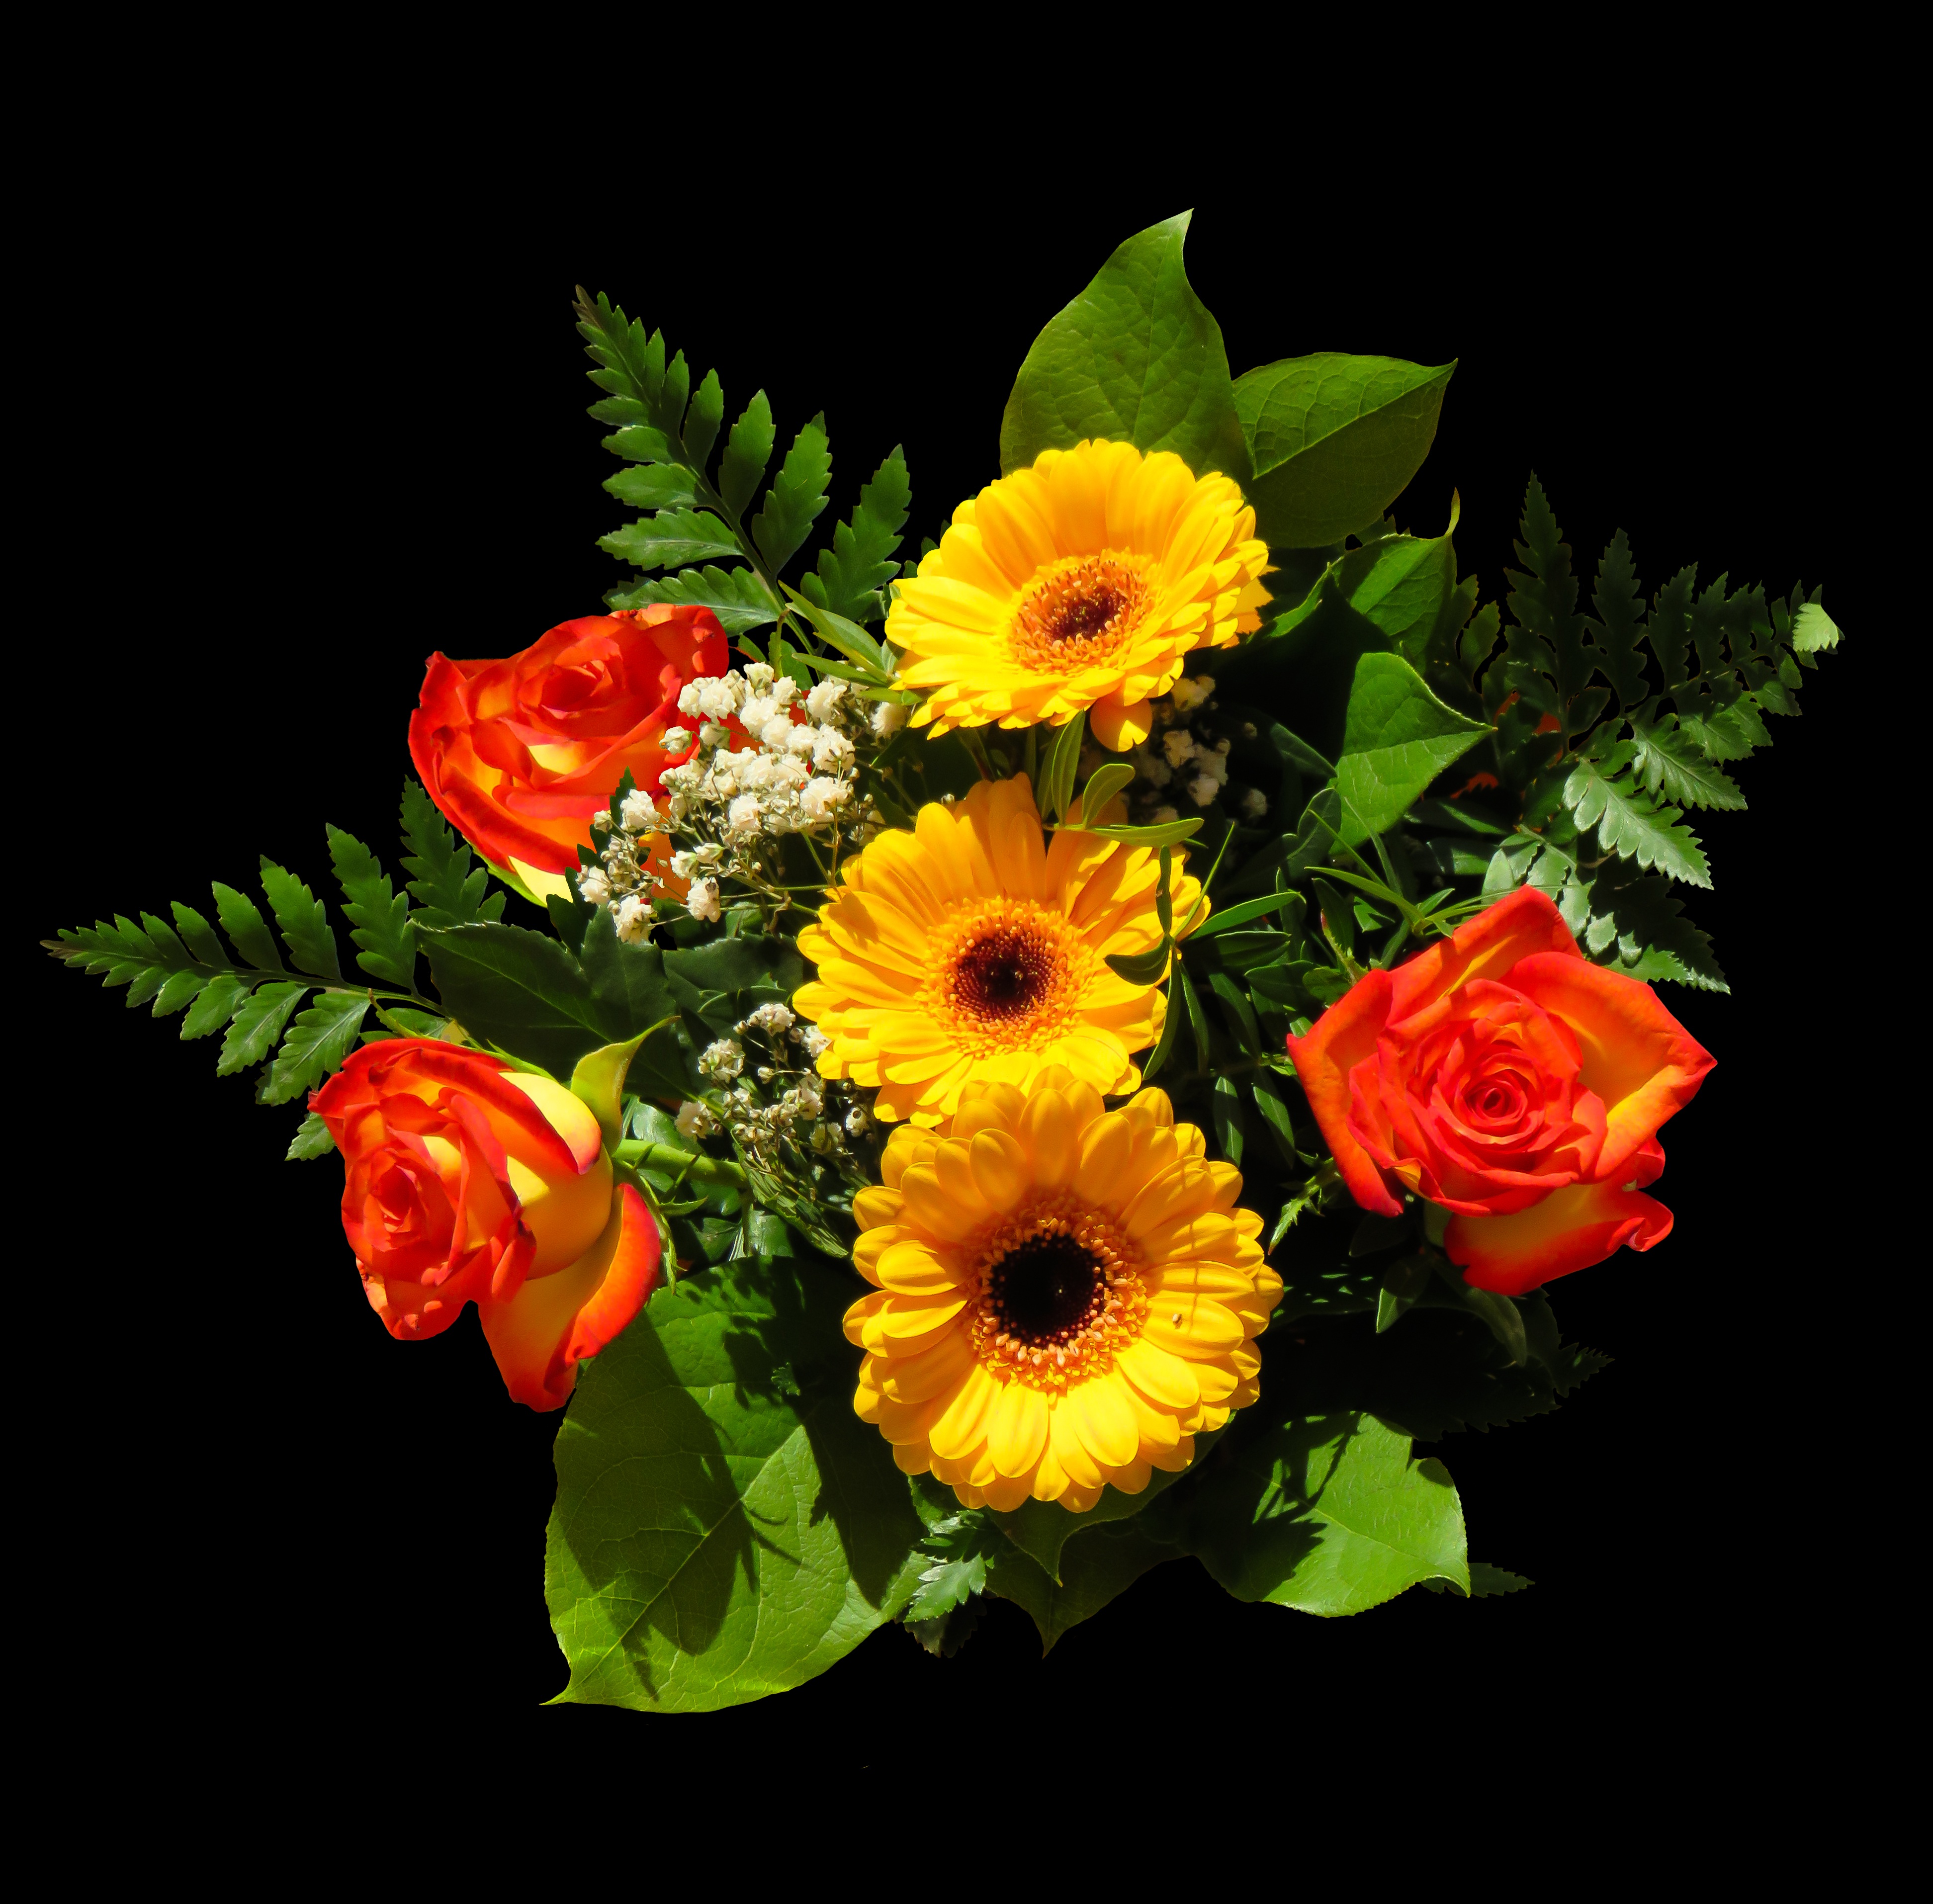 Фото бесплатно Красивый букет, флора, цветок